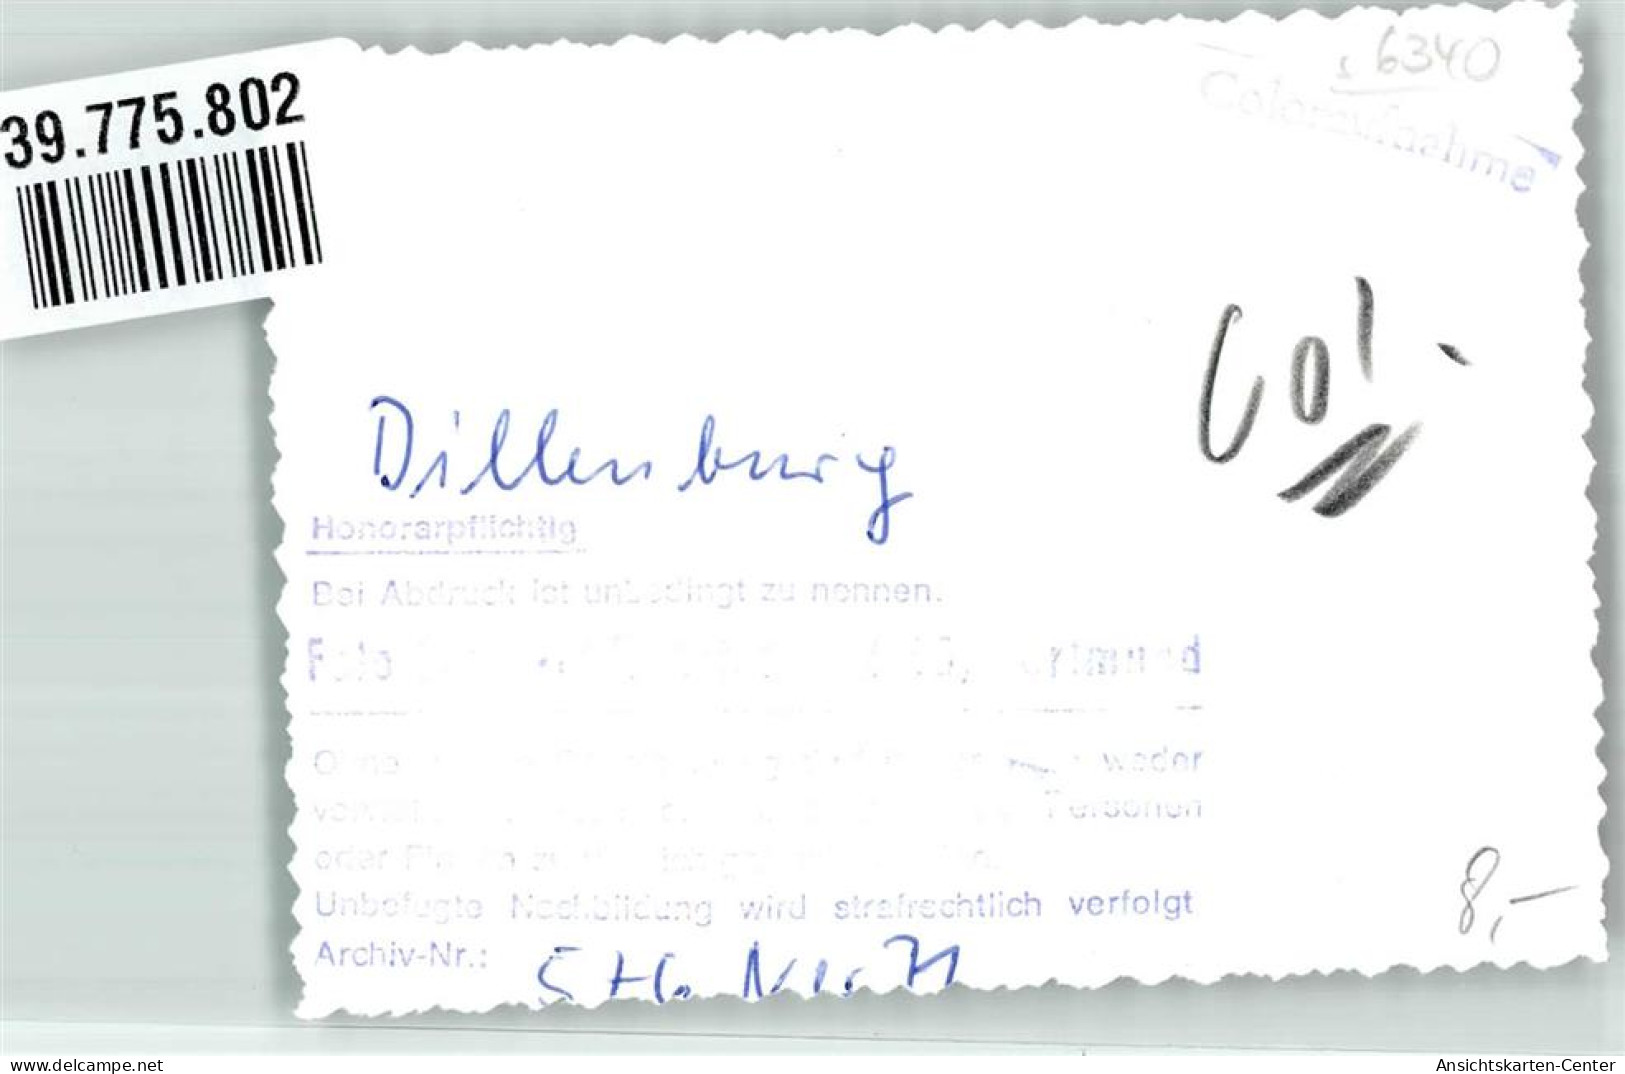 39775802 - Dillenburg - Dillenburg